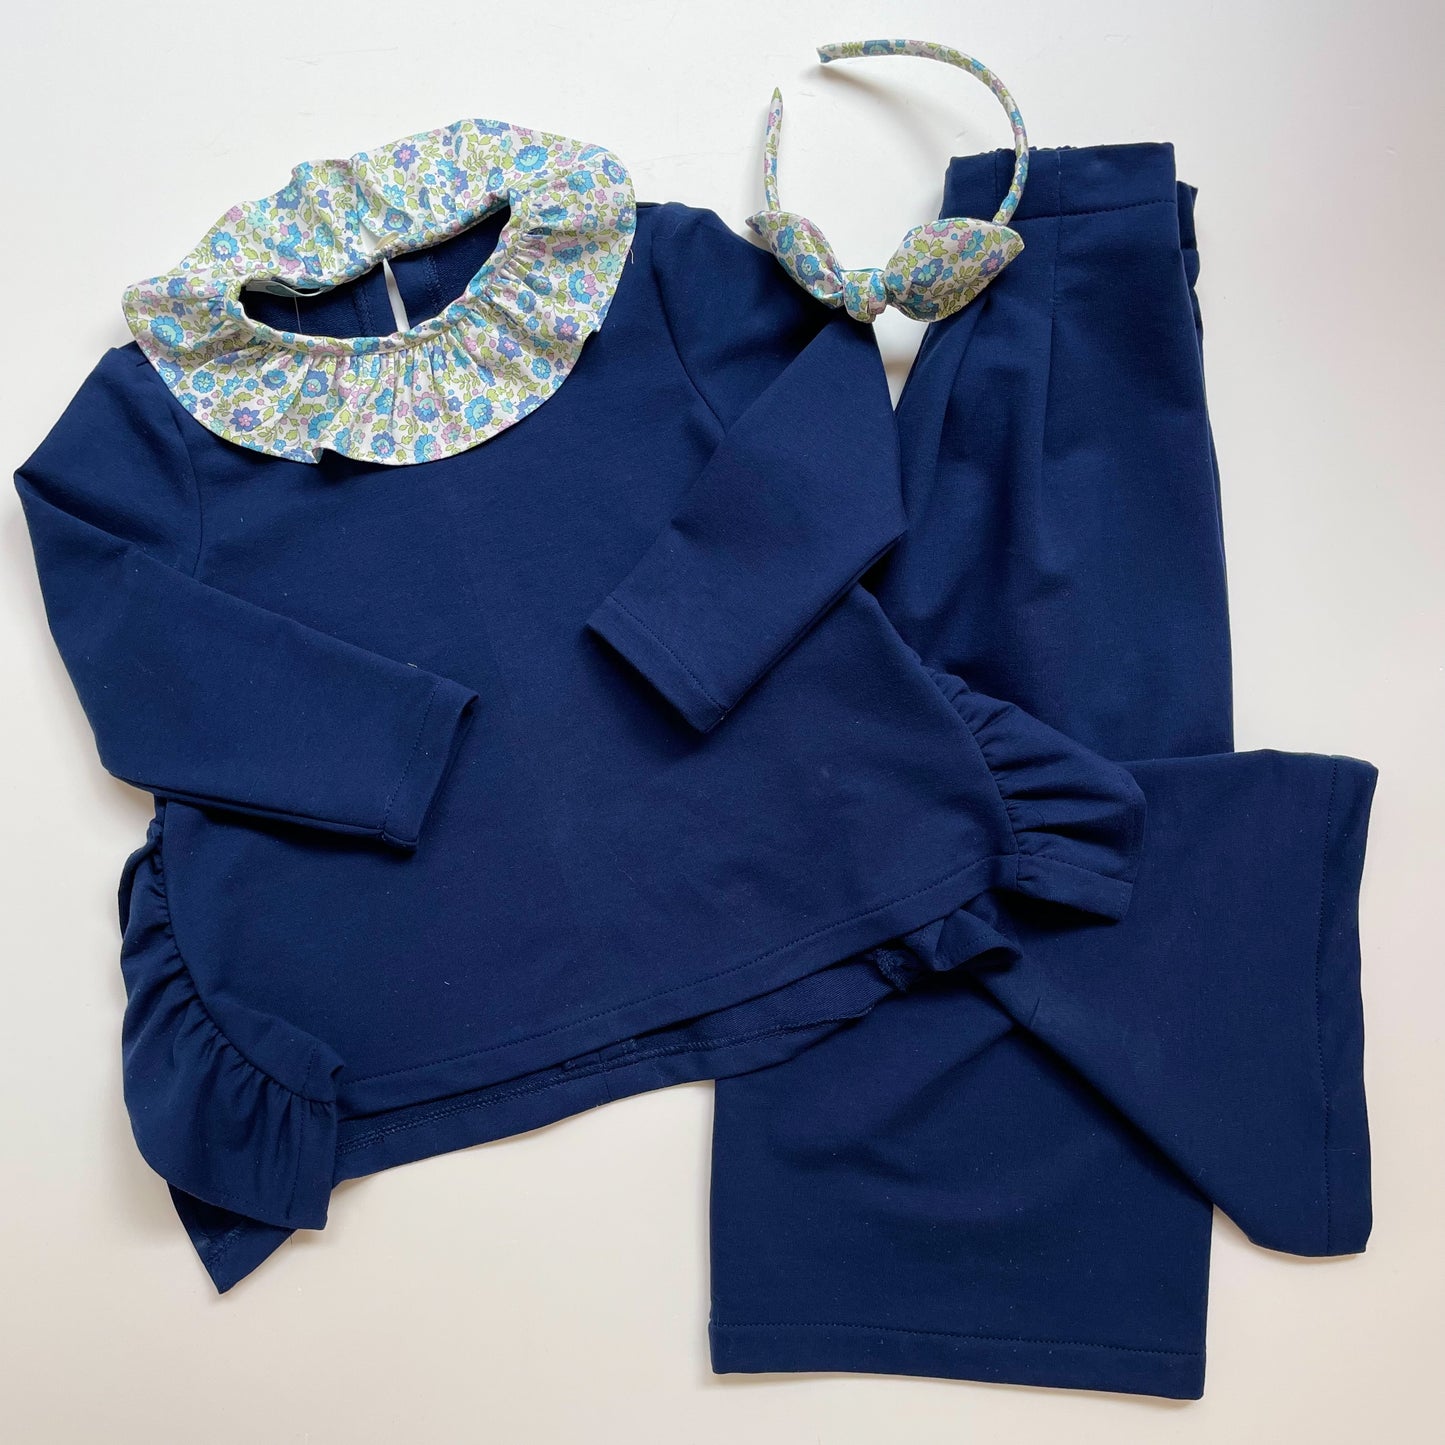 Completo Agata LAB casacca frill laterale e pantalone palazzo blu